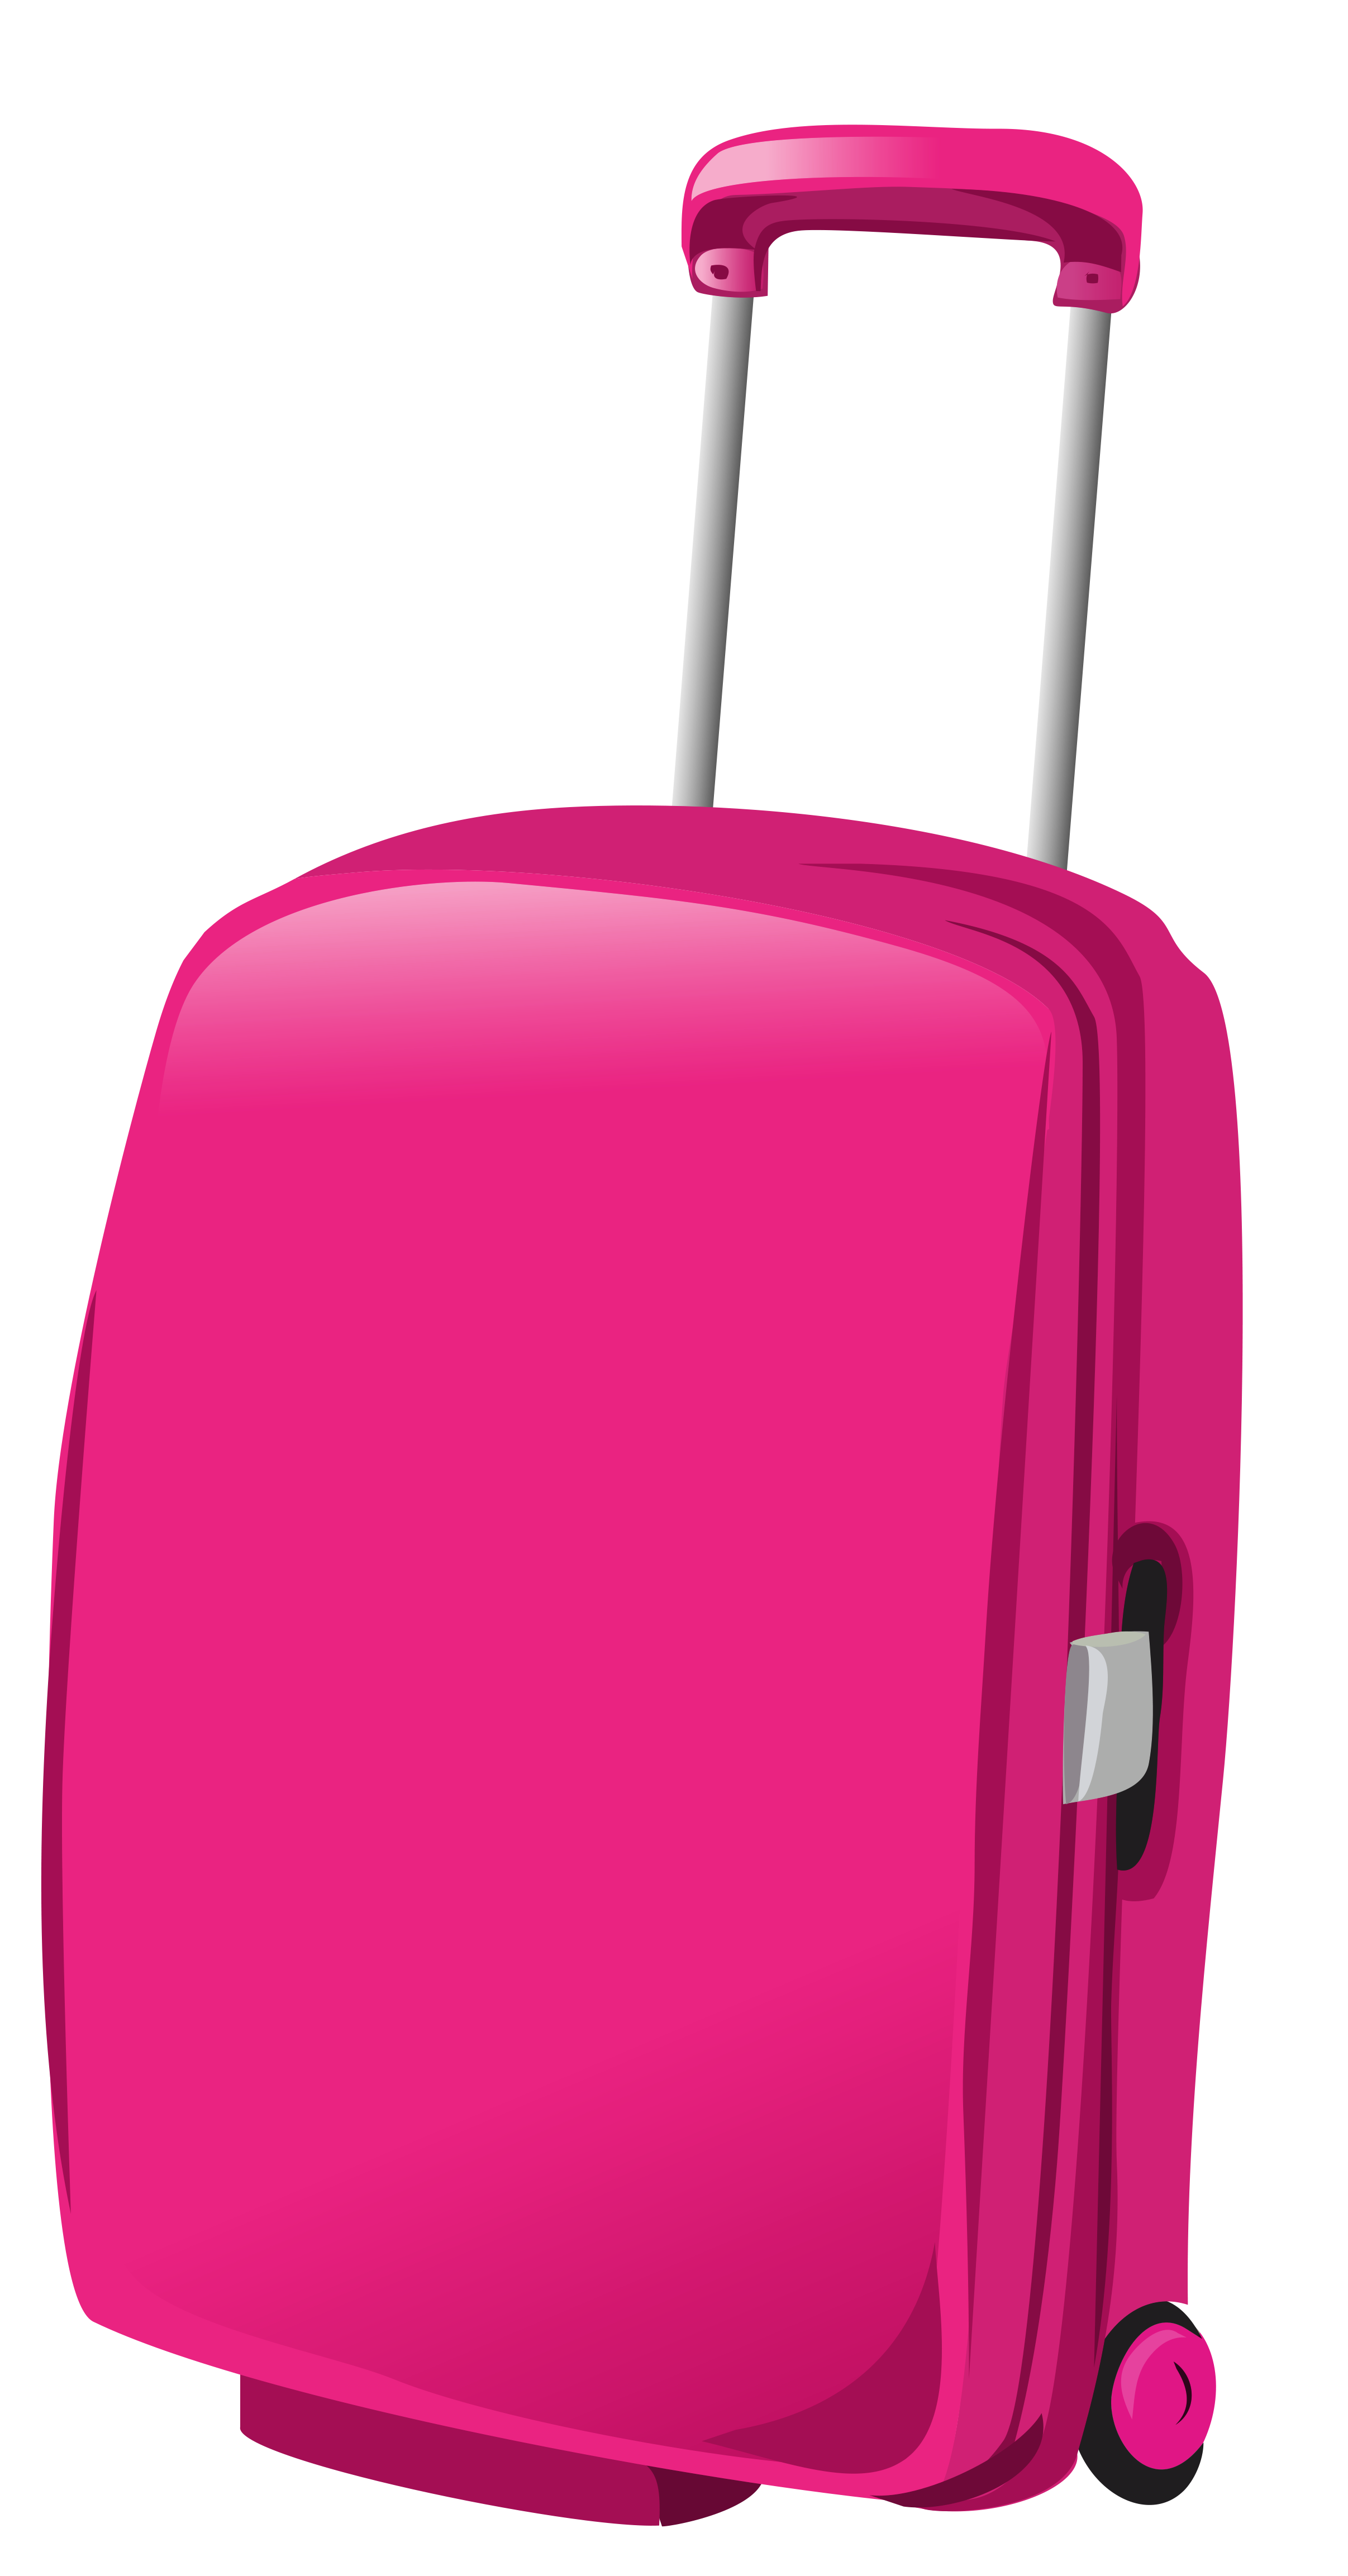 Pink travel bag.